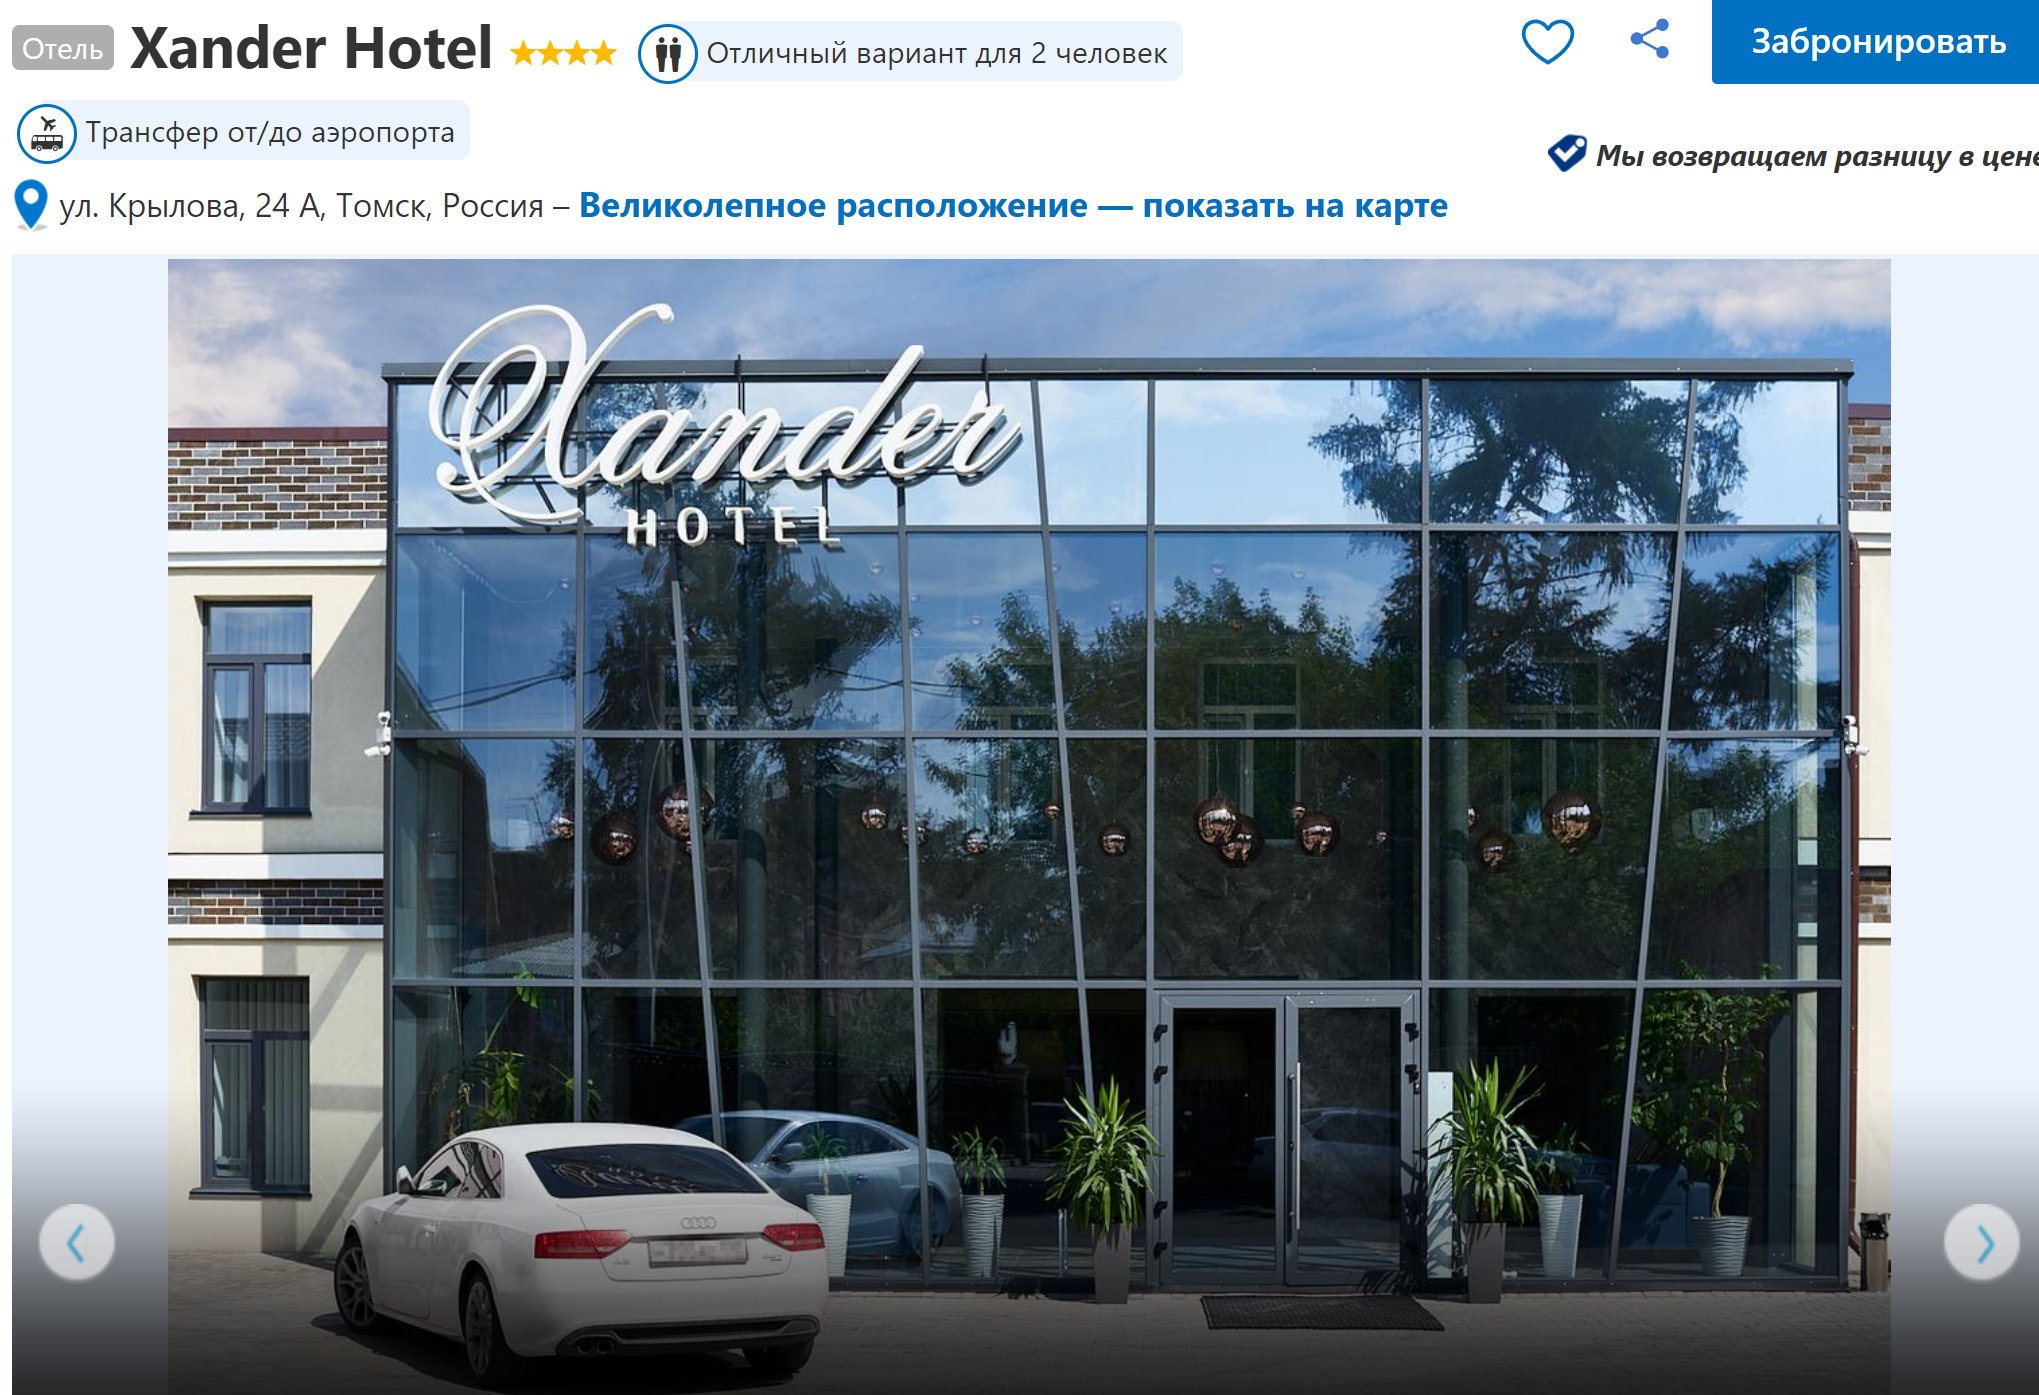 Отель Xander на сайте бронирования. Скриншот